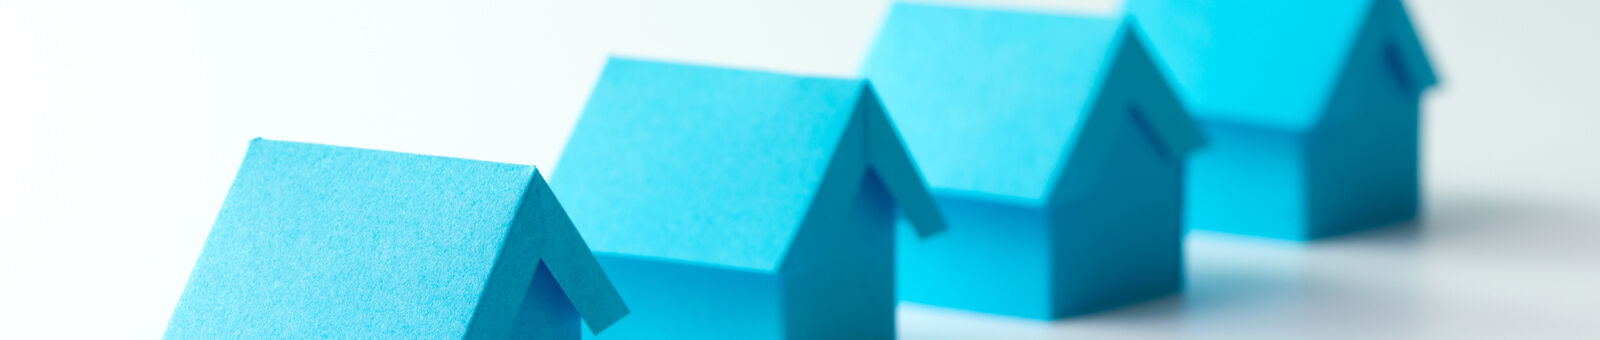 4 maisons de papier bleues alignées